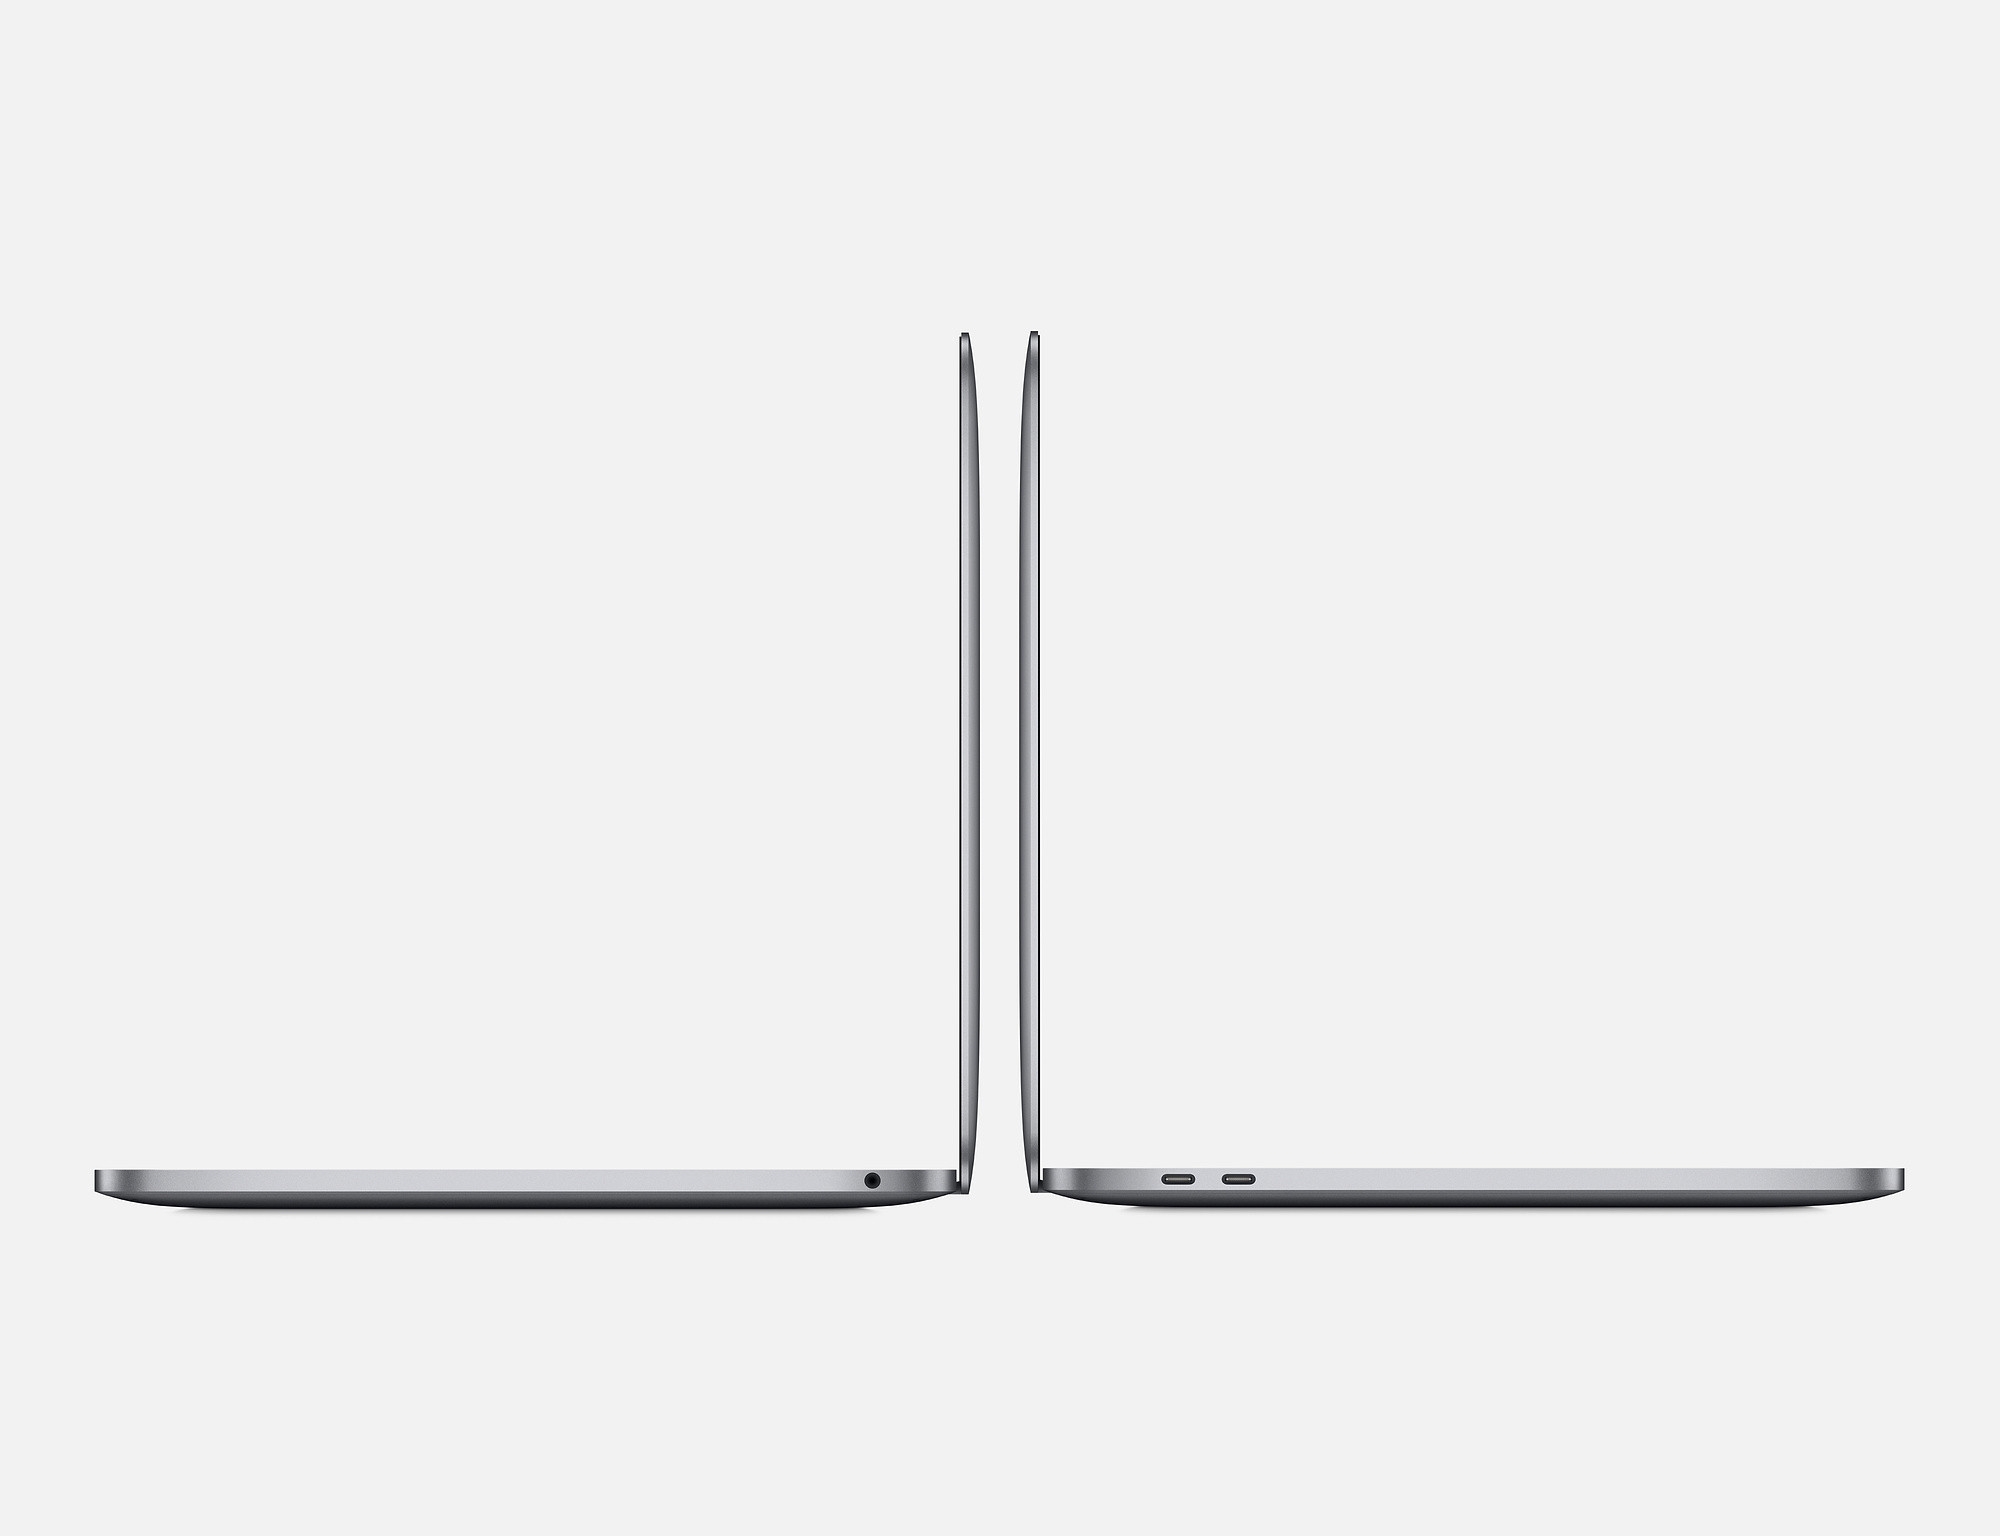 Apple MacBook Pro 13" - Space Grau 2019 MUHN2D/A i5 1,4GHz, 8GB RAM, 128GB SSD, macOS - Touch Bar